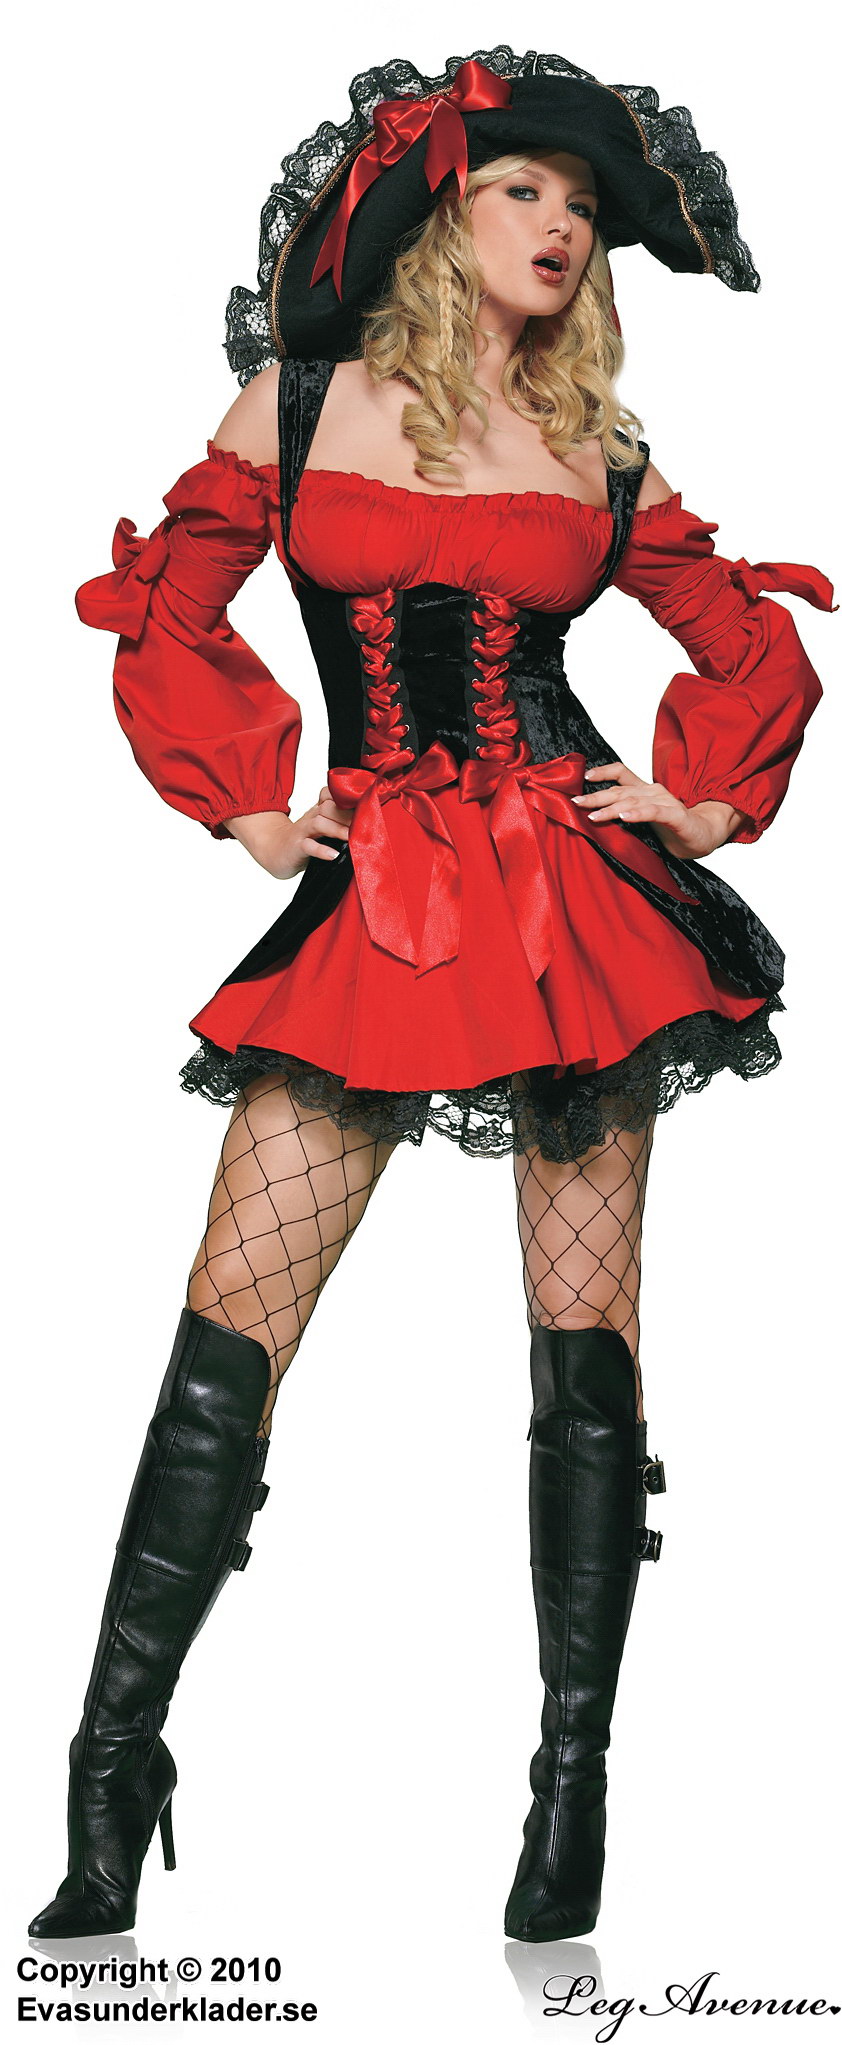 Weibliche Piratenkapitänin, Kostüm-Hut, Spitzenbesatz, großes Schleife